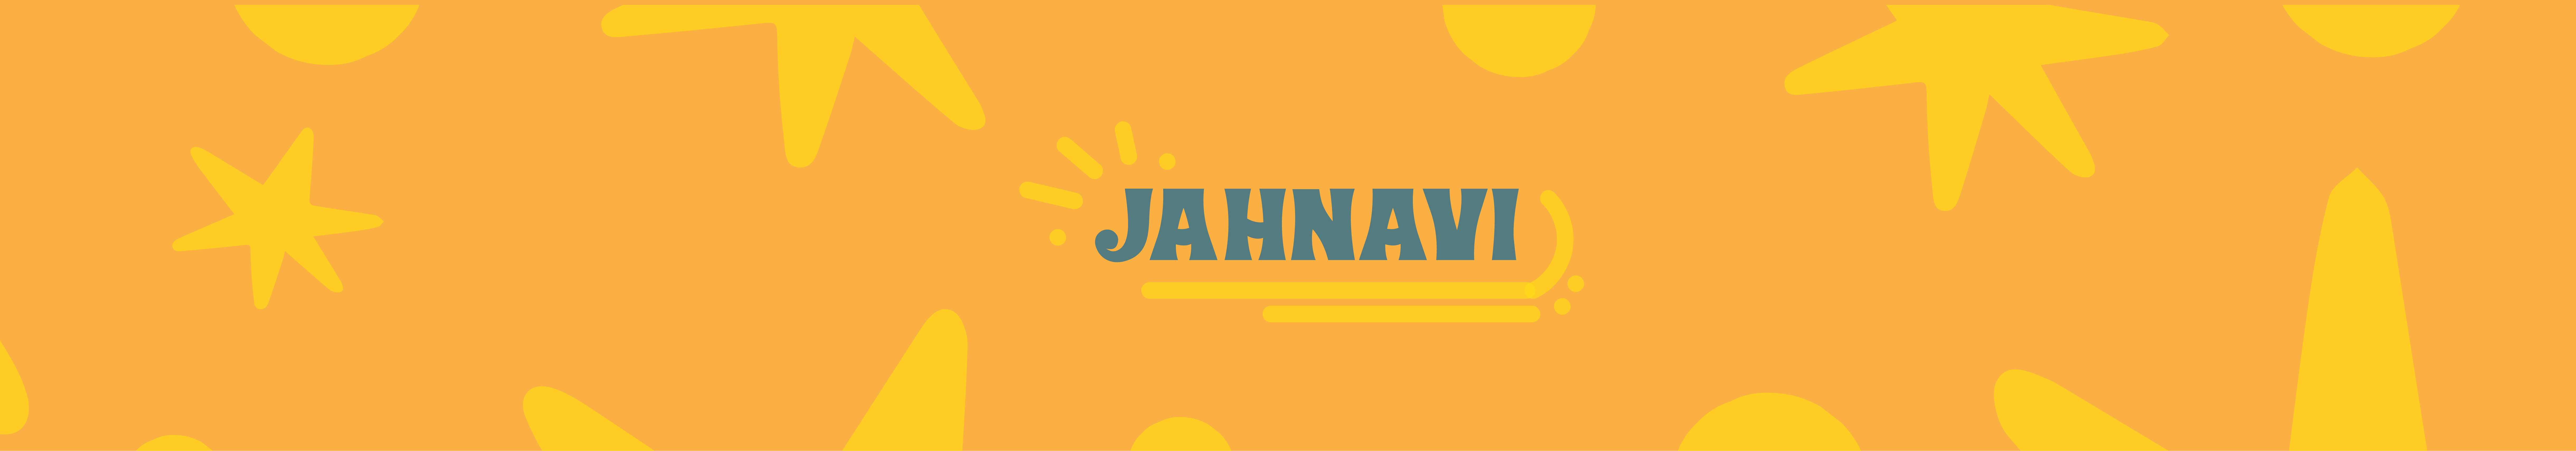 Jahnavi Singh's profile banner